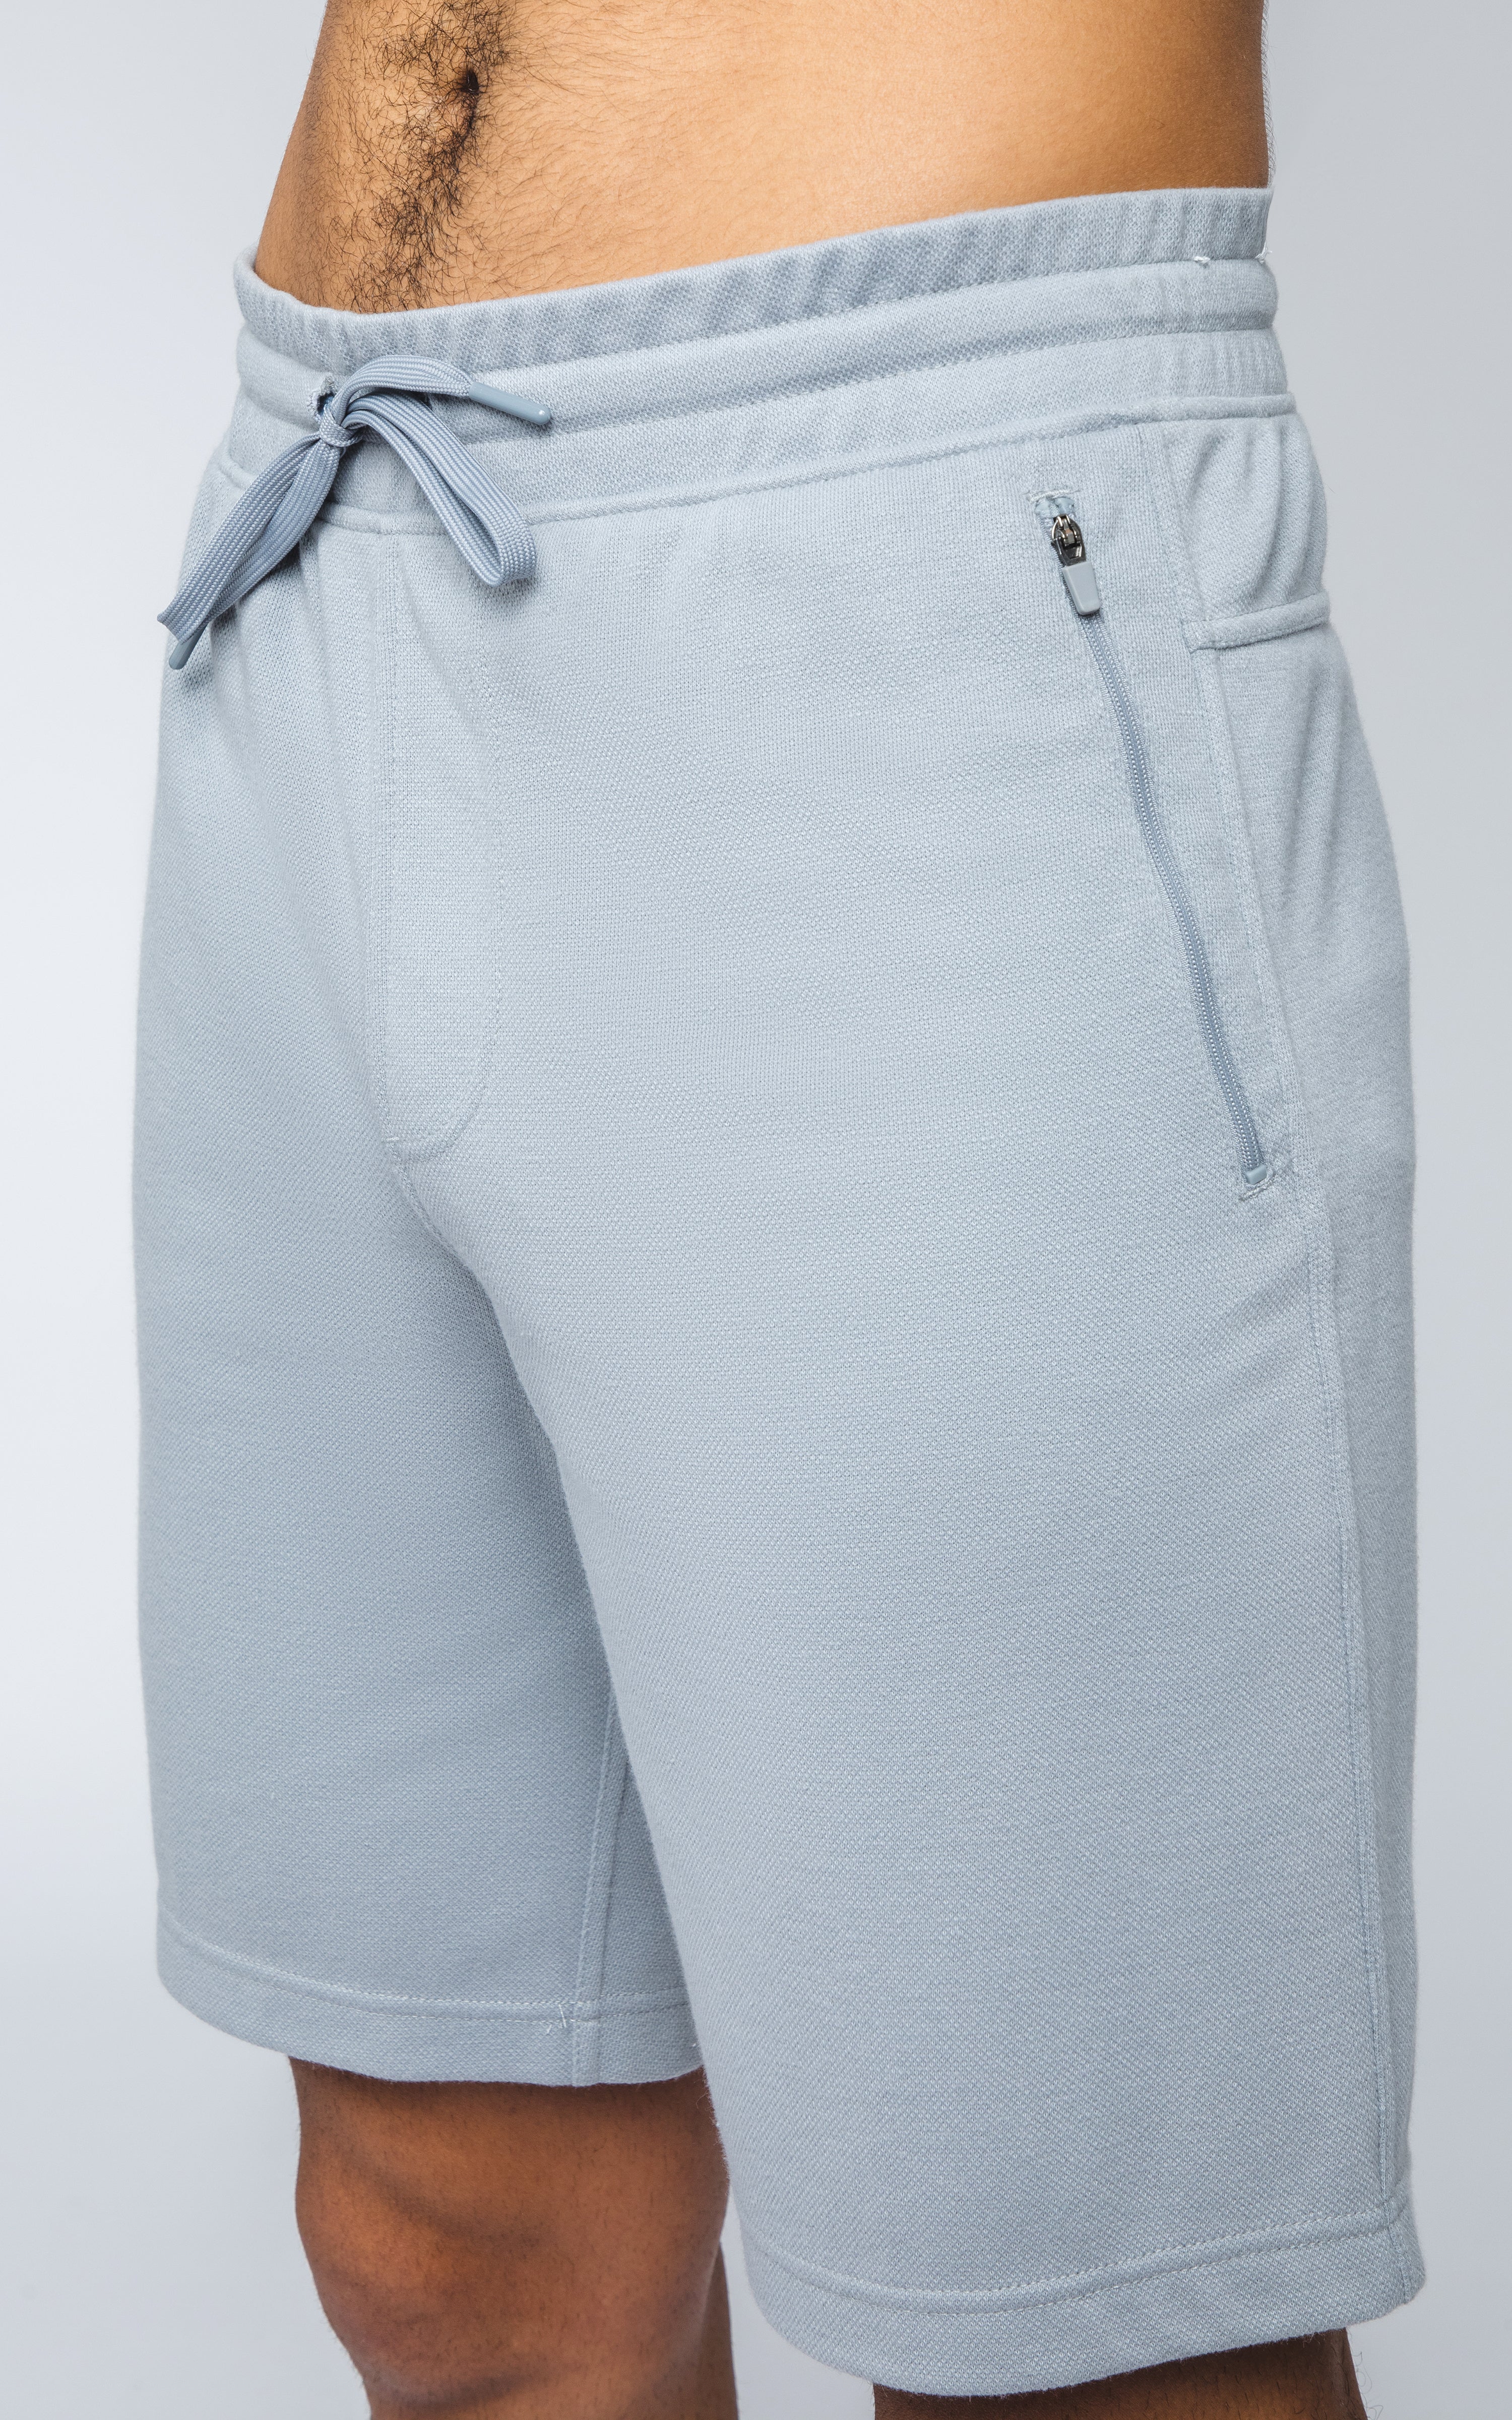 Mens 2 Side  Zip Pocket and Back Pocket Shorts